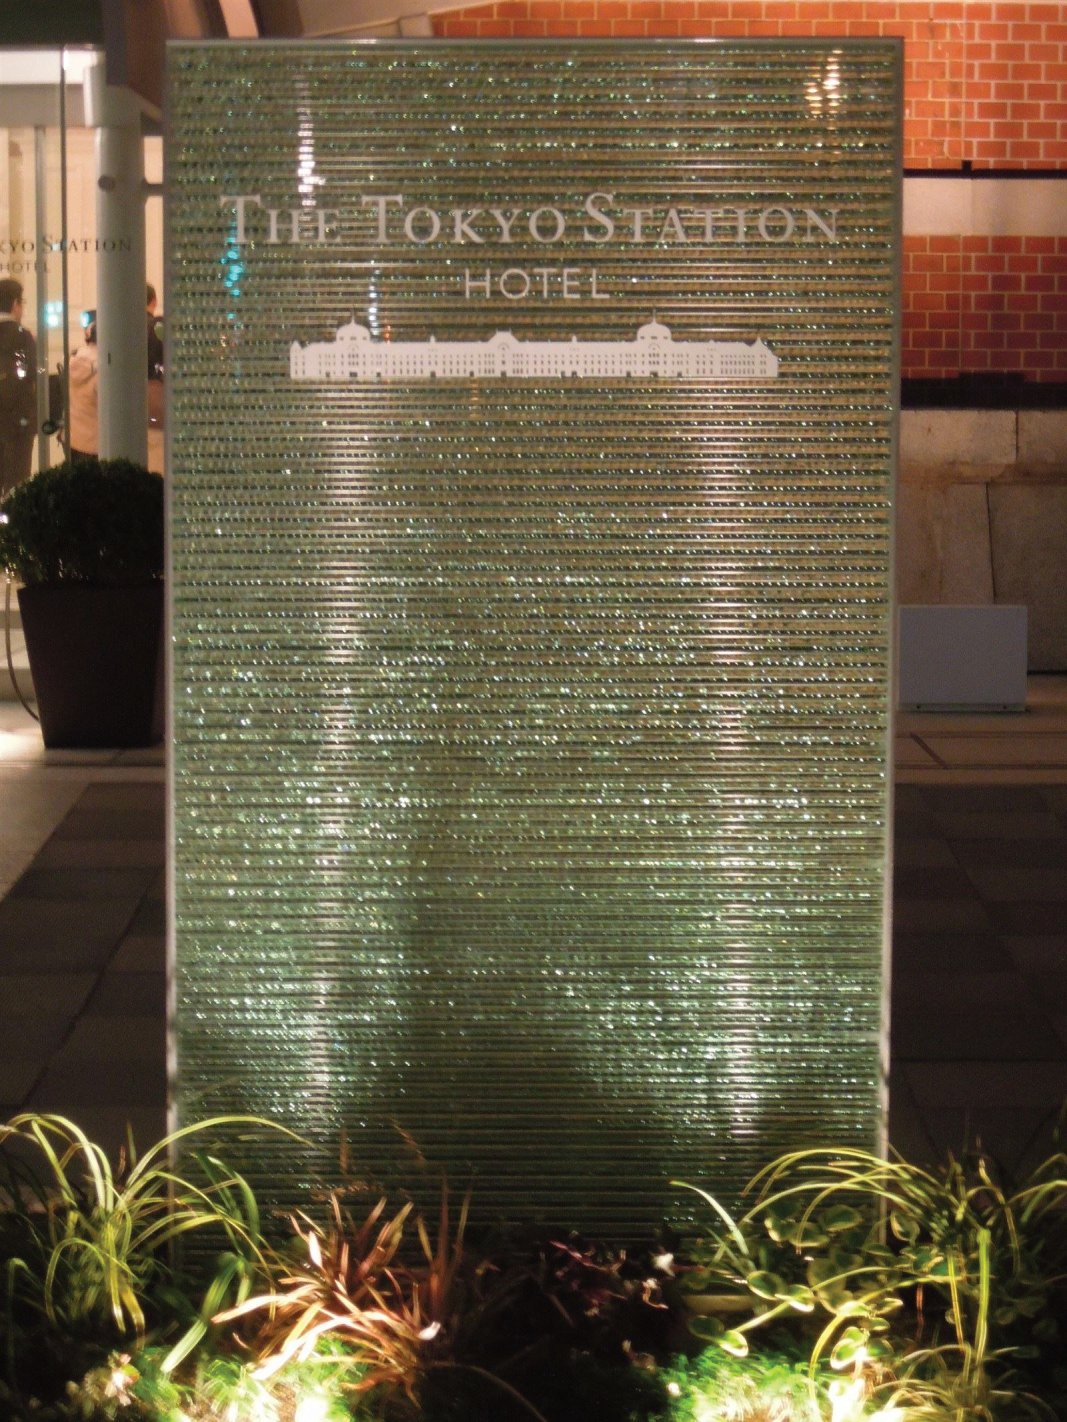 東京ステーションホテル入口サイン。復元された建物全景がデザインされ、さりげなくも印象的なデザインと素材で設えられています。